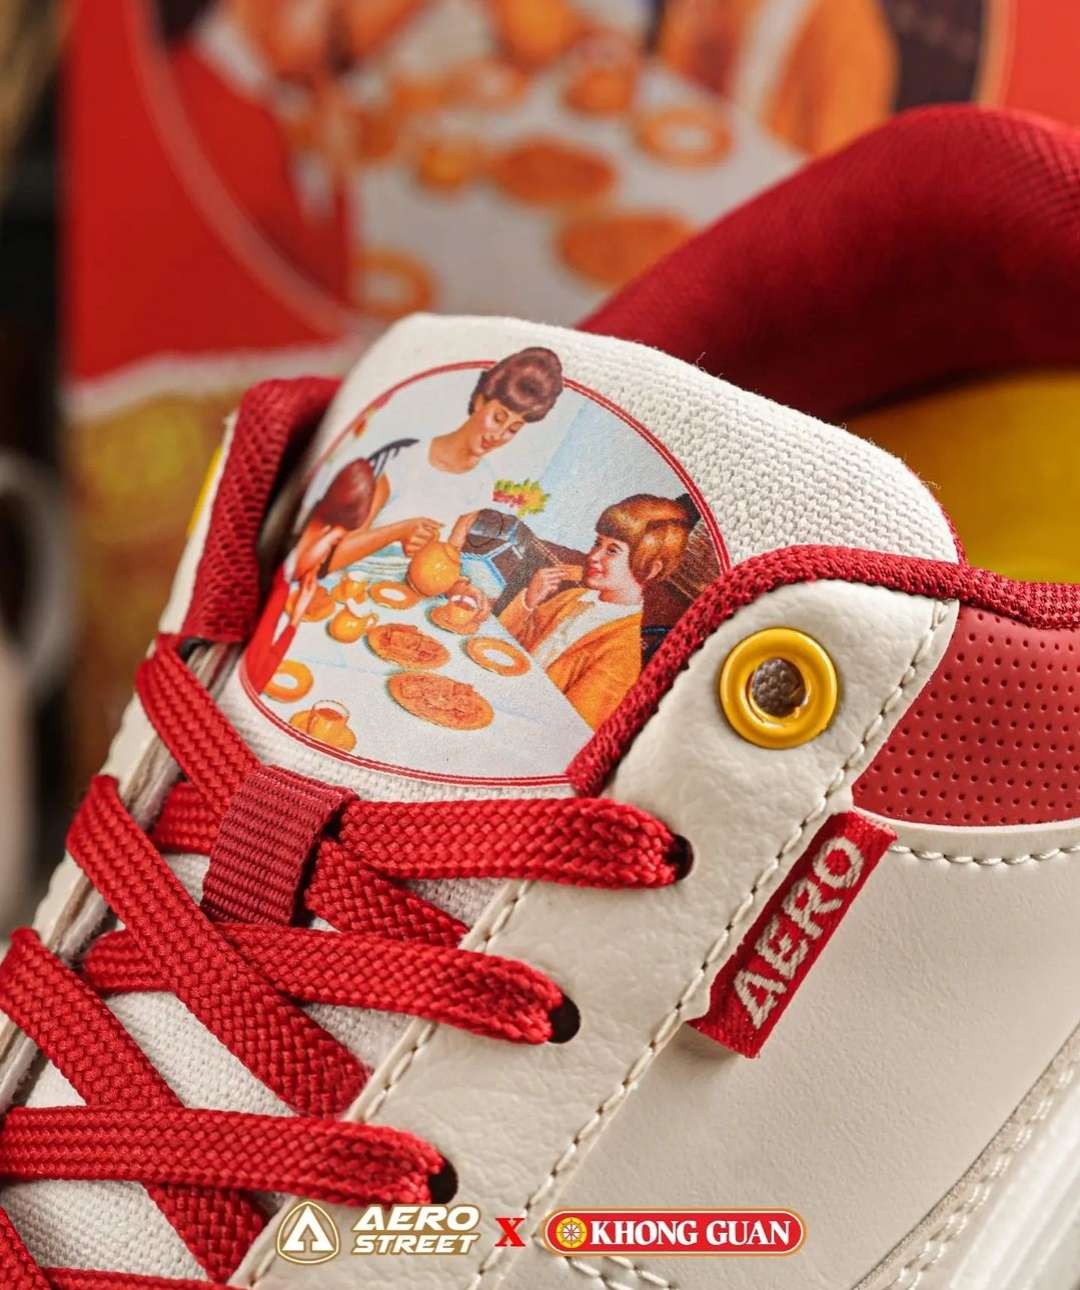 Sneakers Aerostreet x biskuit legendaris Khong Guan yang tersedia setiap lebaran. (Foto: Instagram)